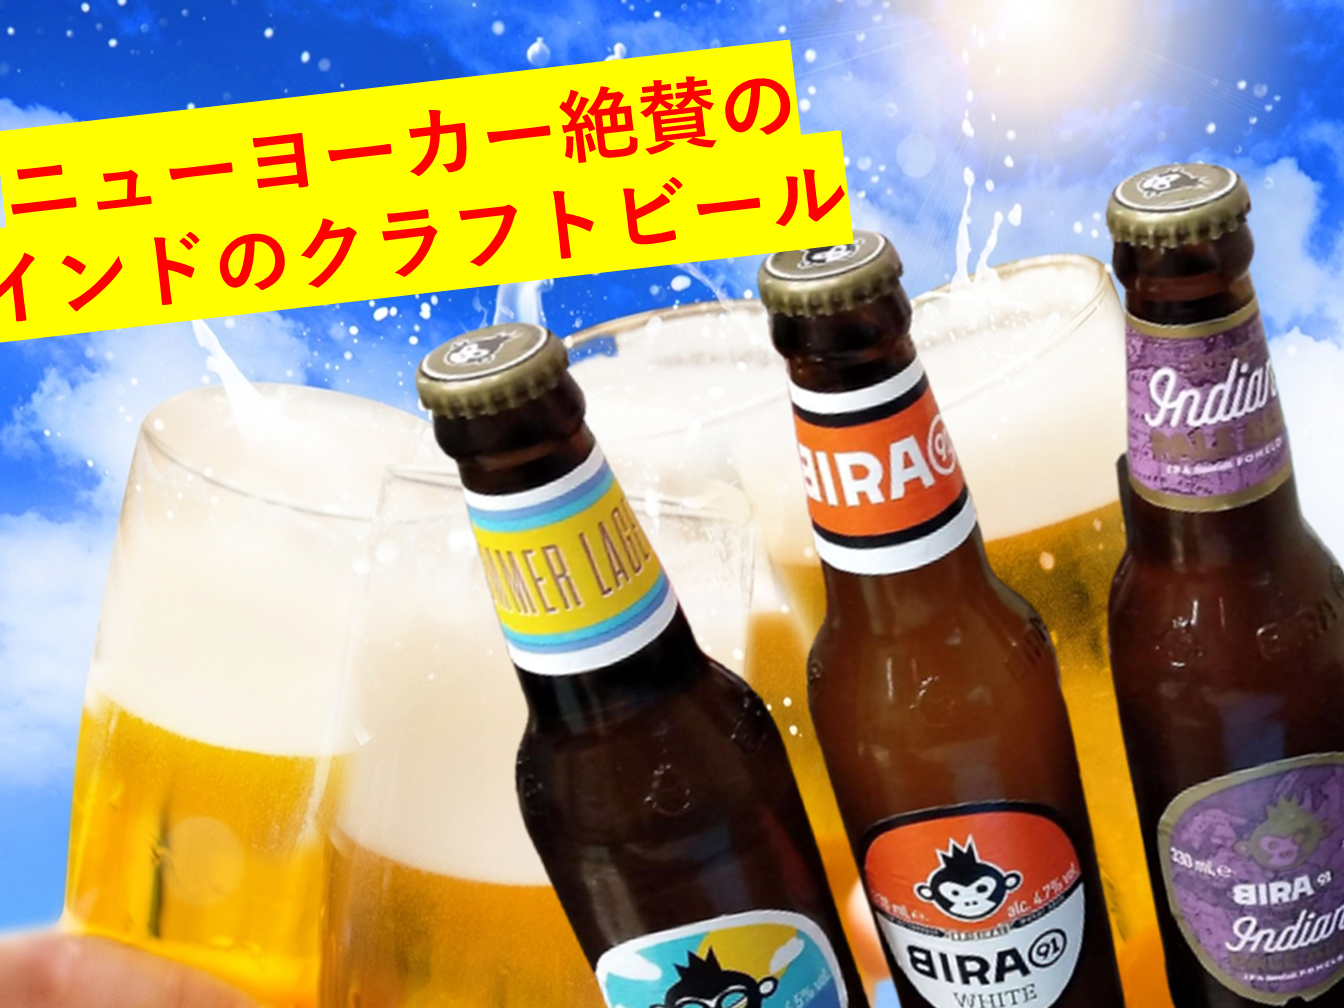 【夏祭り】7月29日・30日 インドビール祭り